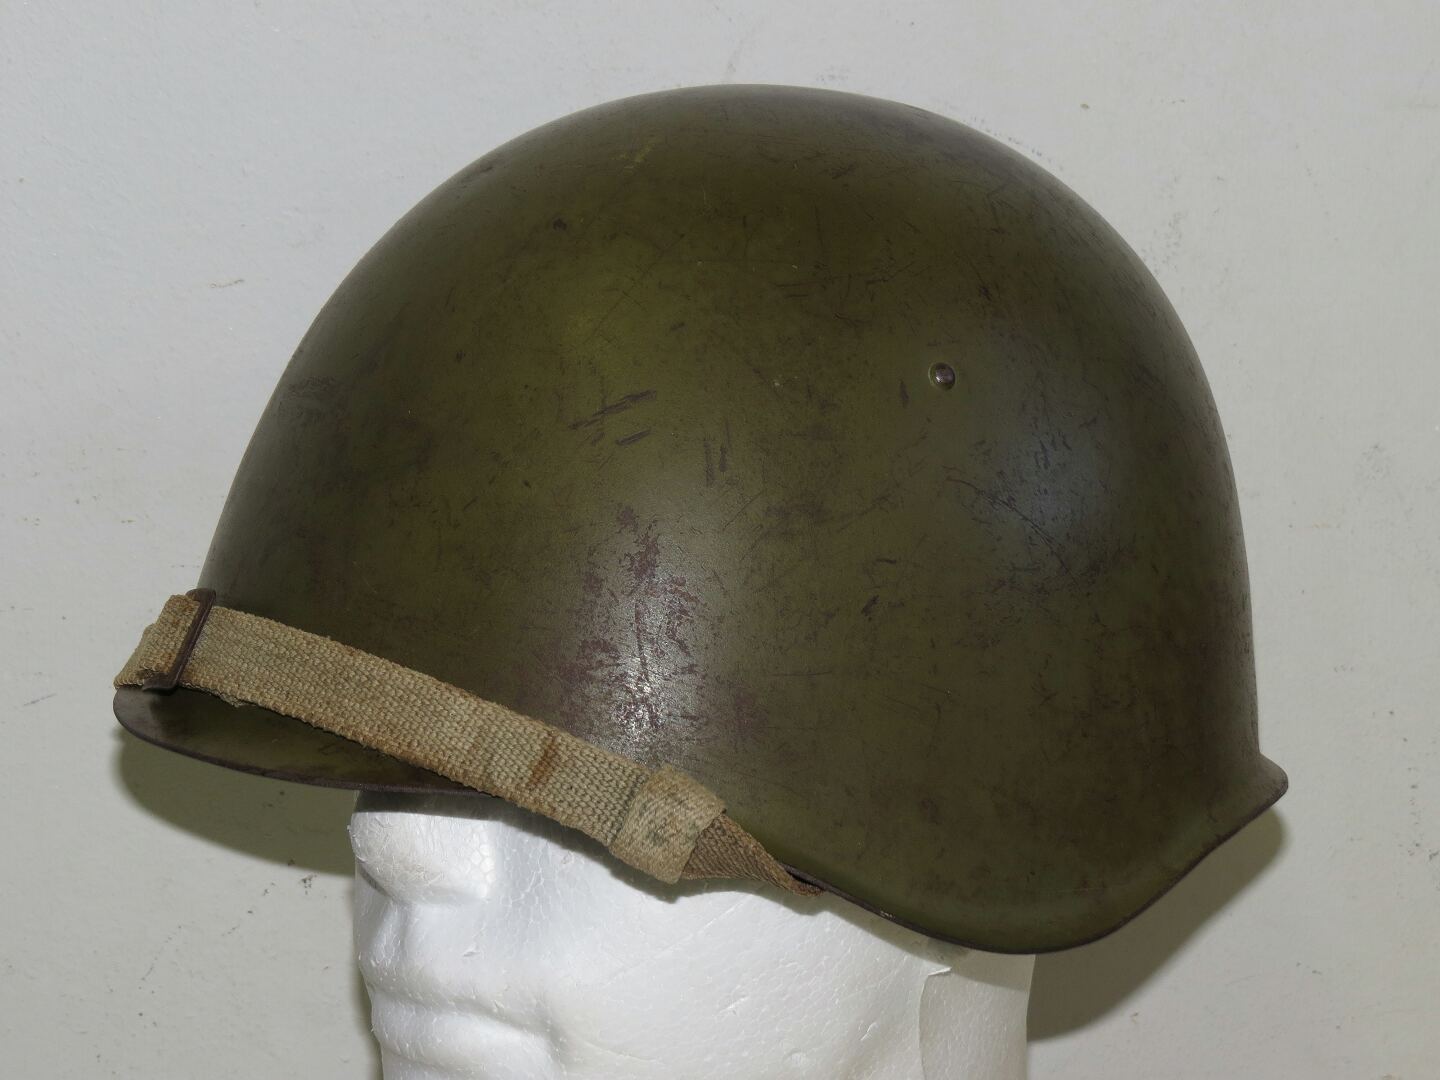 Russian WW2 M39, Ssch-39 steel helmet, LMZ-1940